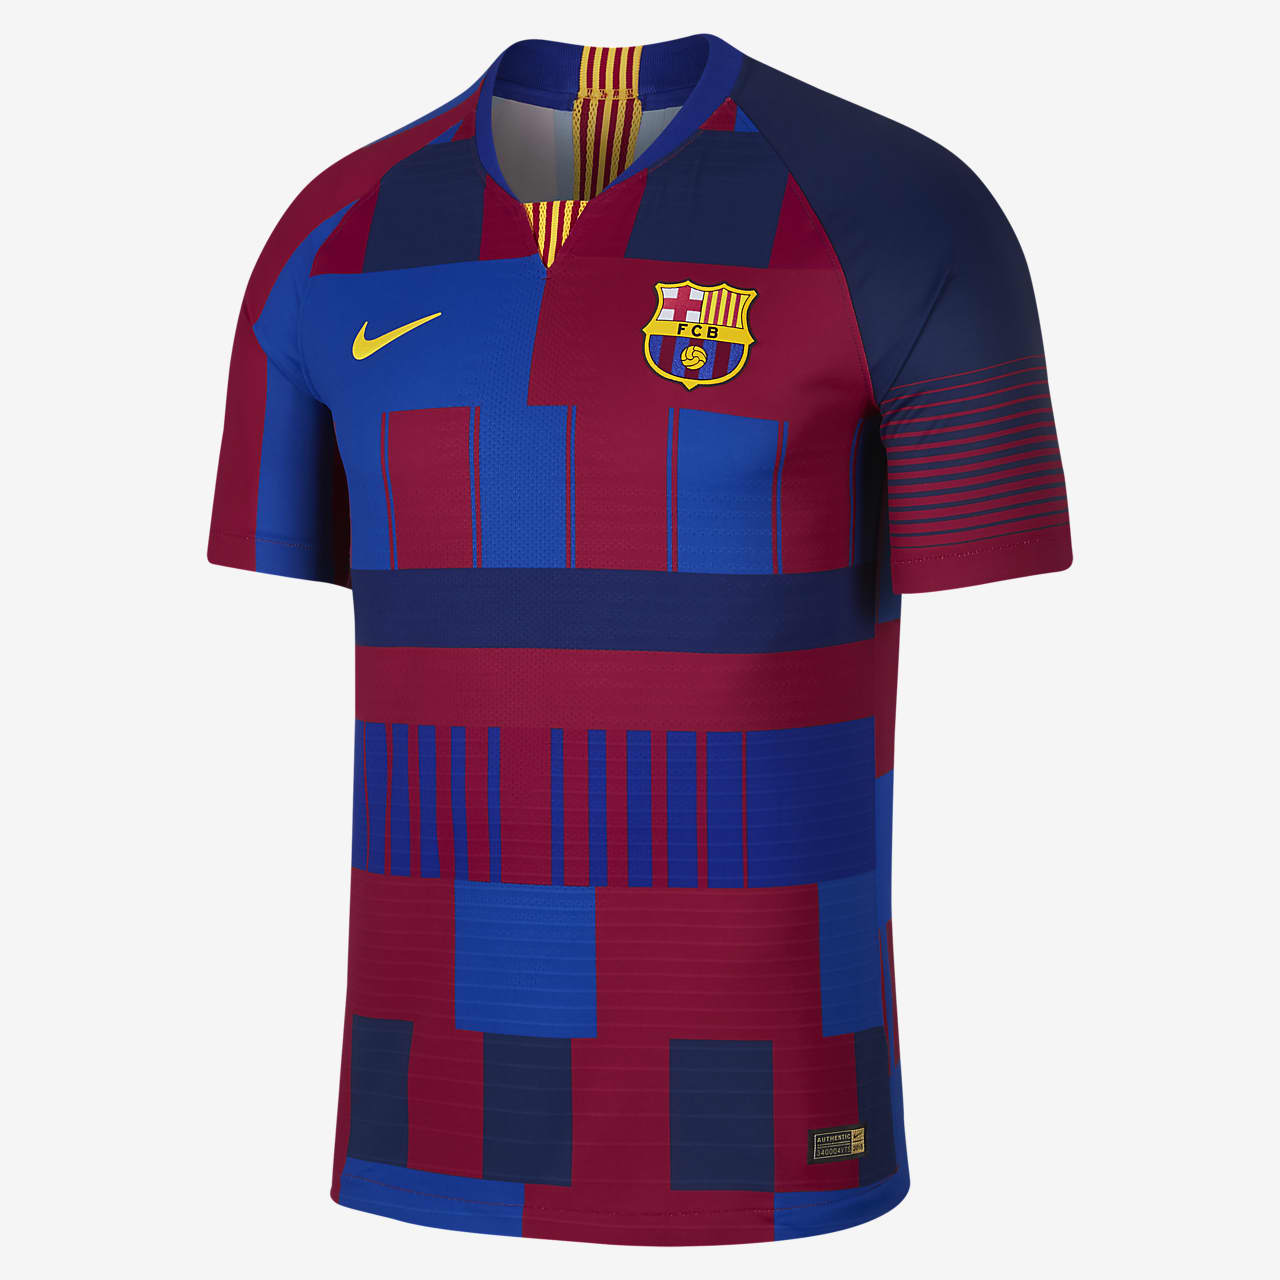 Camiseta para hombre FC Barcelona 20th Anniversary Vapor Match. Nike.com